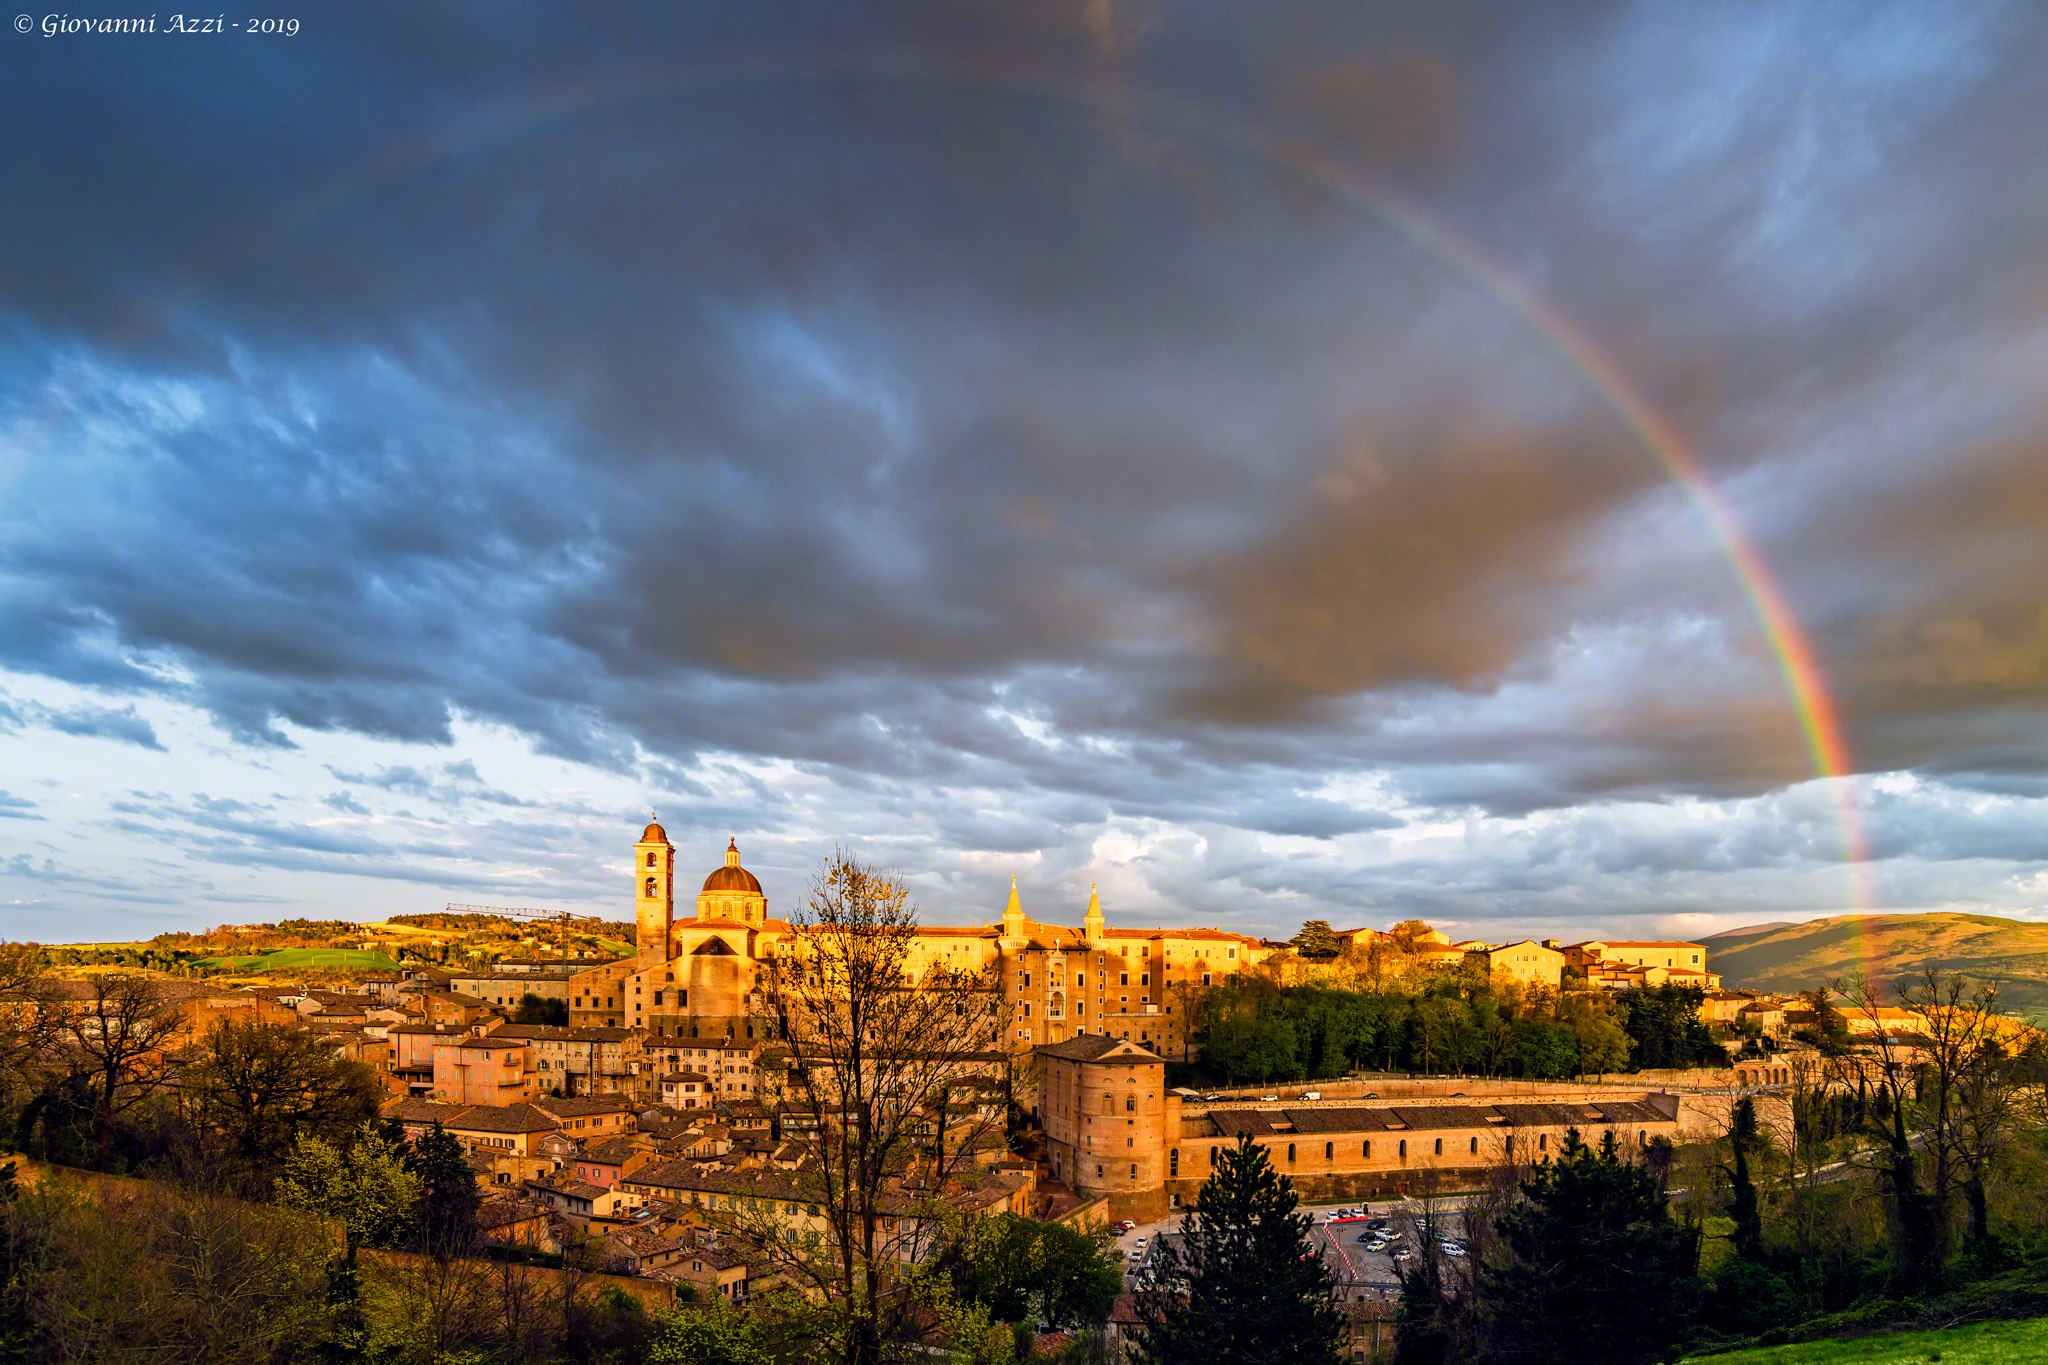 The Rainbow of Urbino...